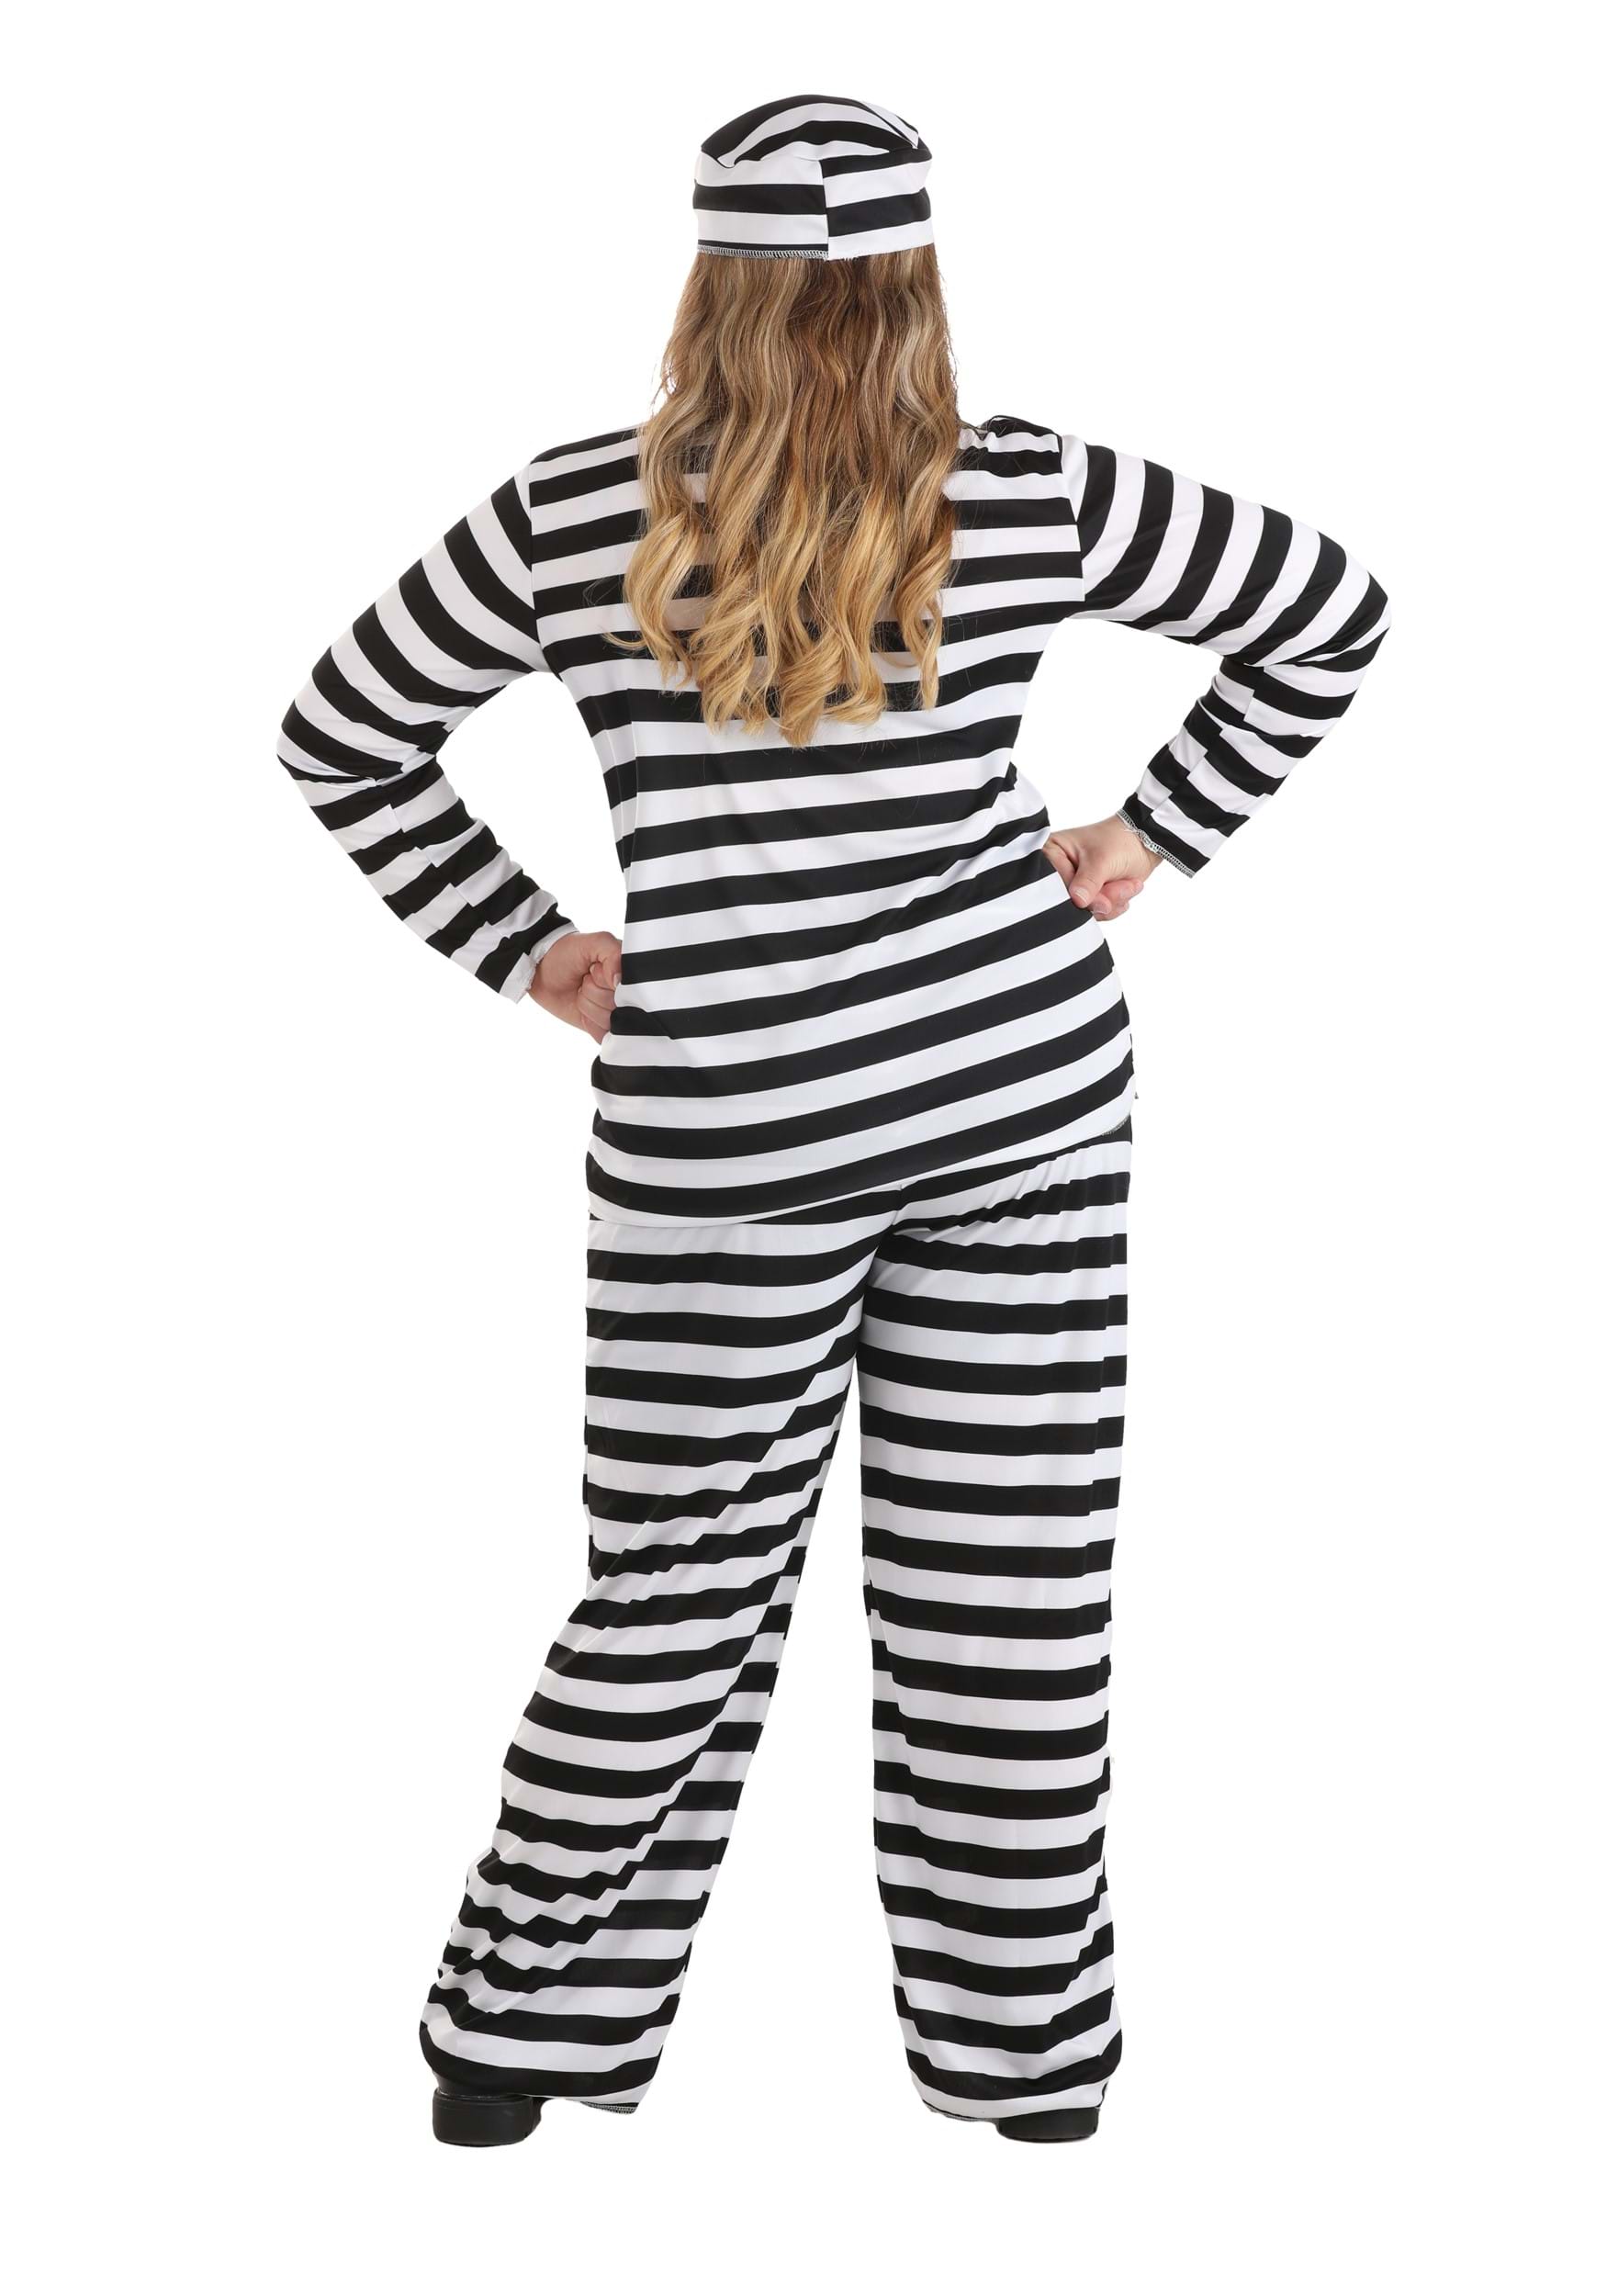 Women's Striped Prisoner Fancy Dress Costume , Jailbird Women's Fancy Dress Costume